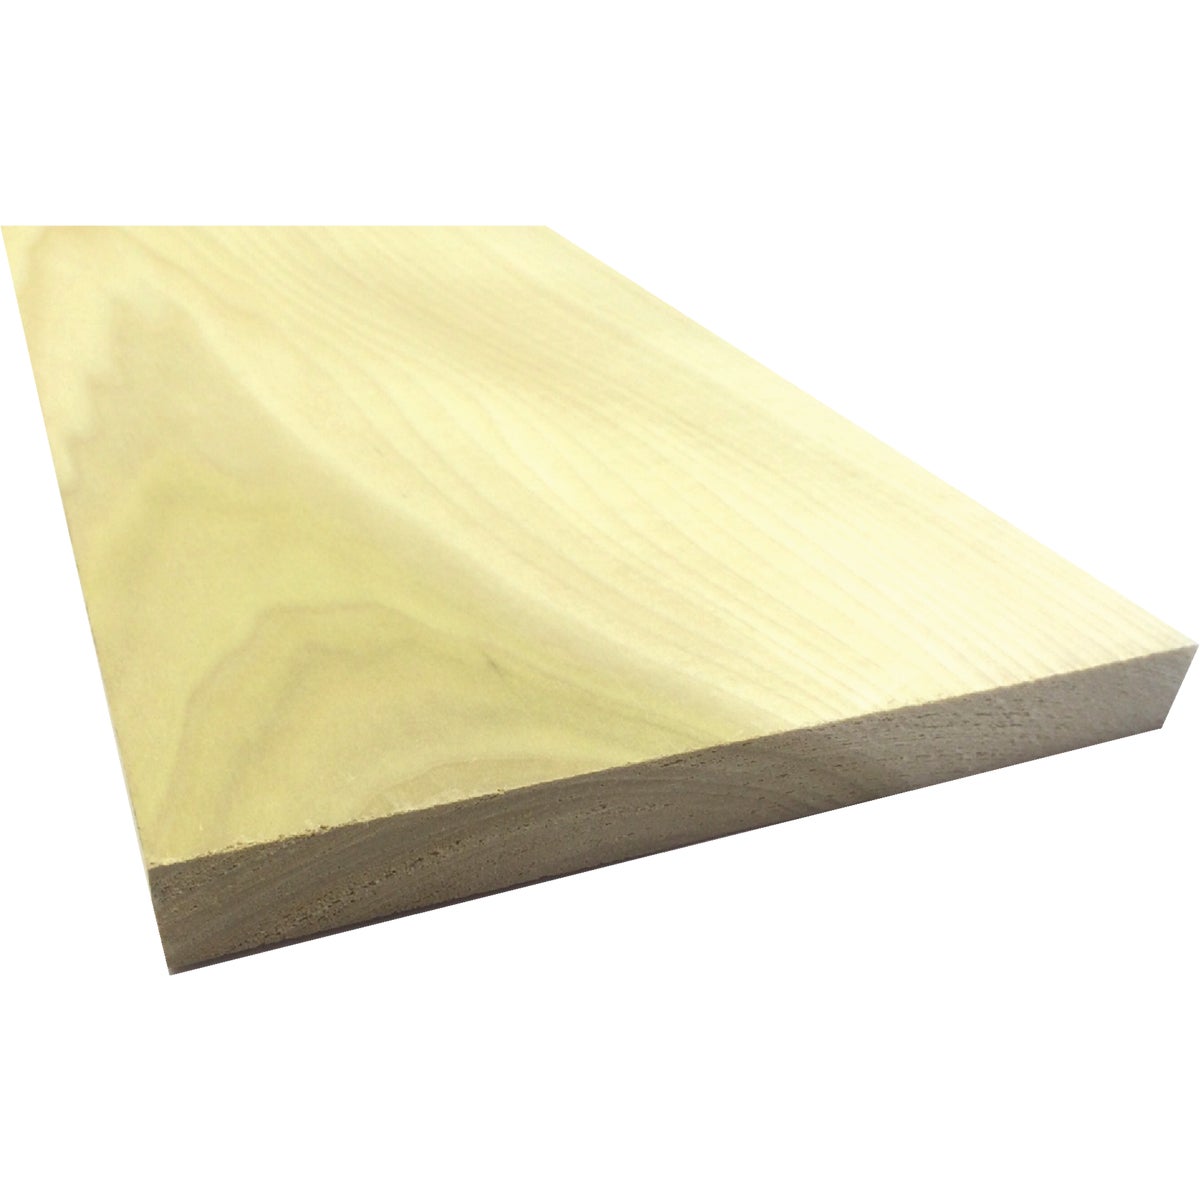 Waddell 1 In. x 8 In. x 3 Ft. Poplar Wood Board